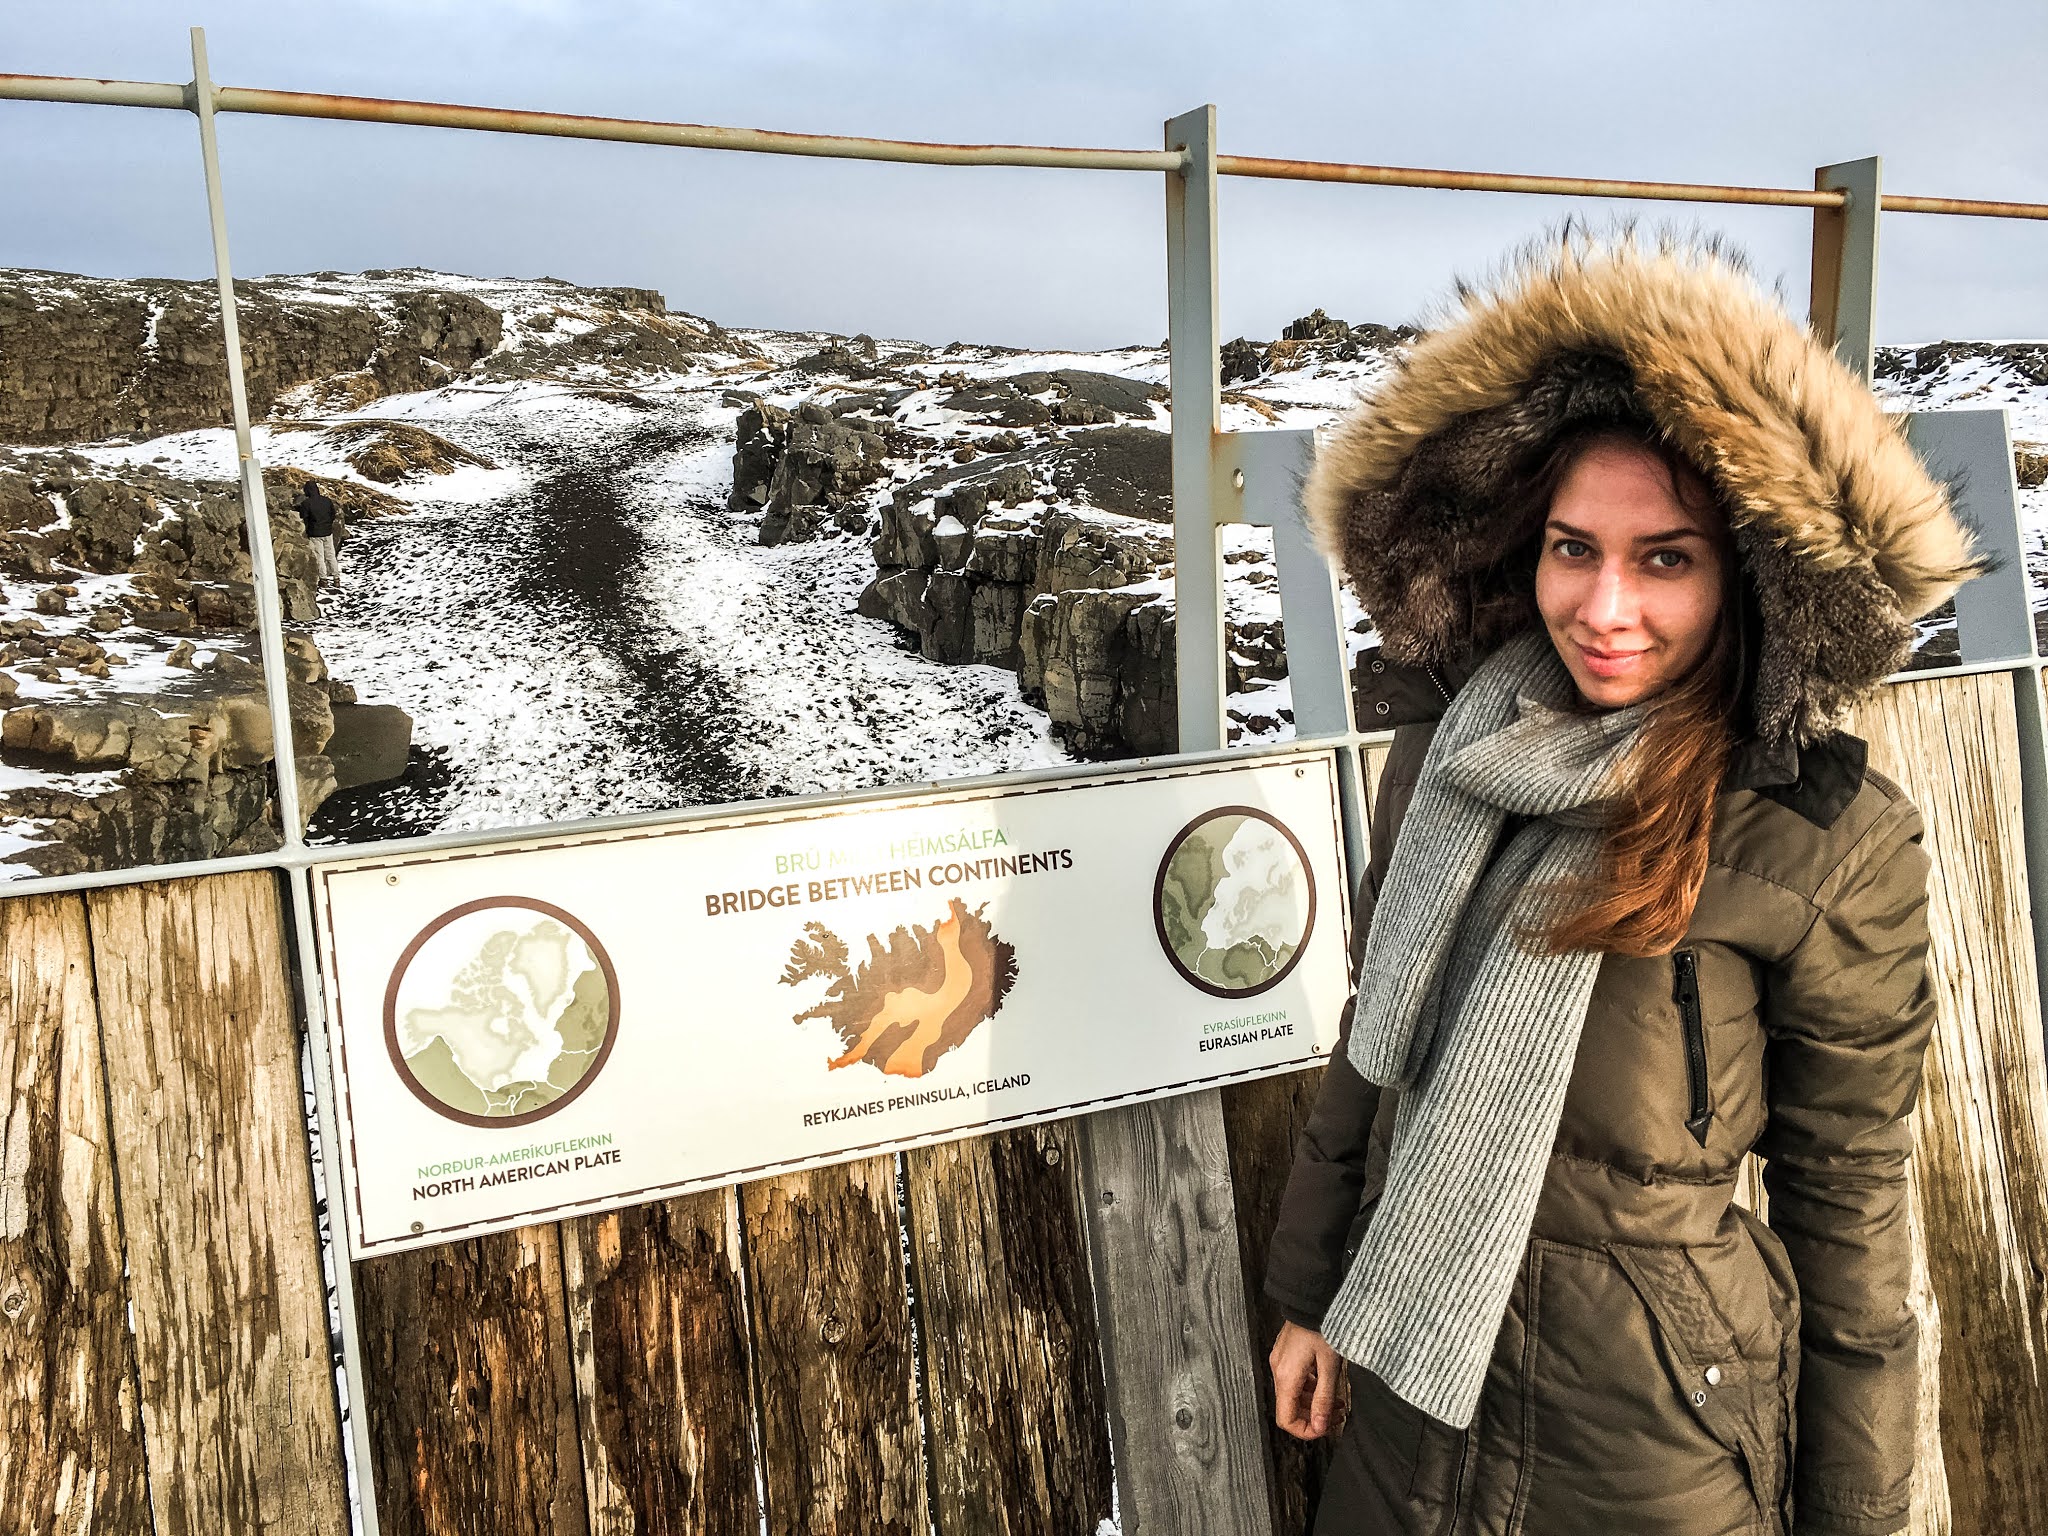 Malvina Dunder blog podróże, rozwój osobisty, relacje, Islandia